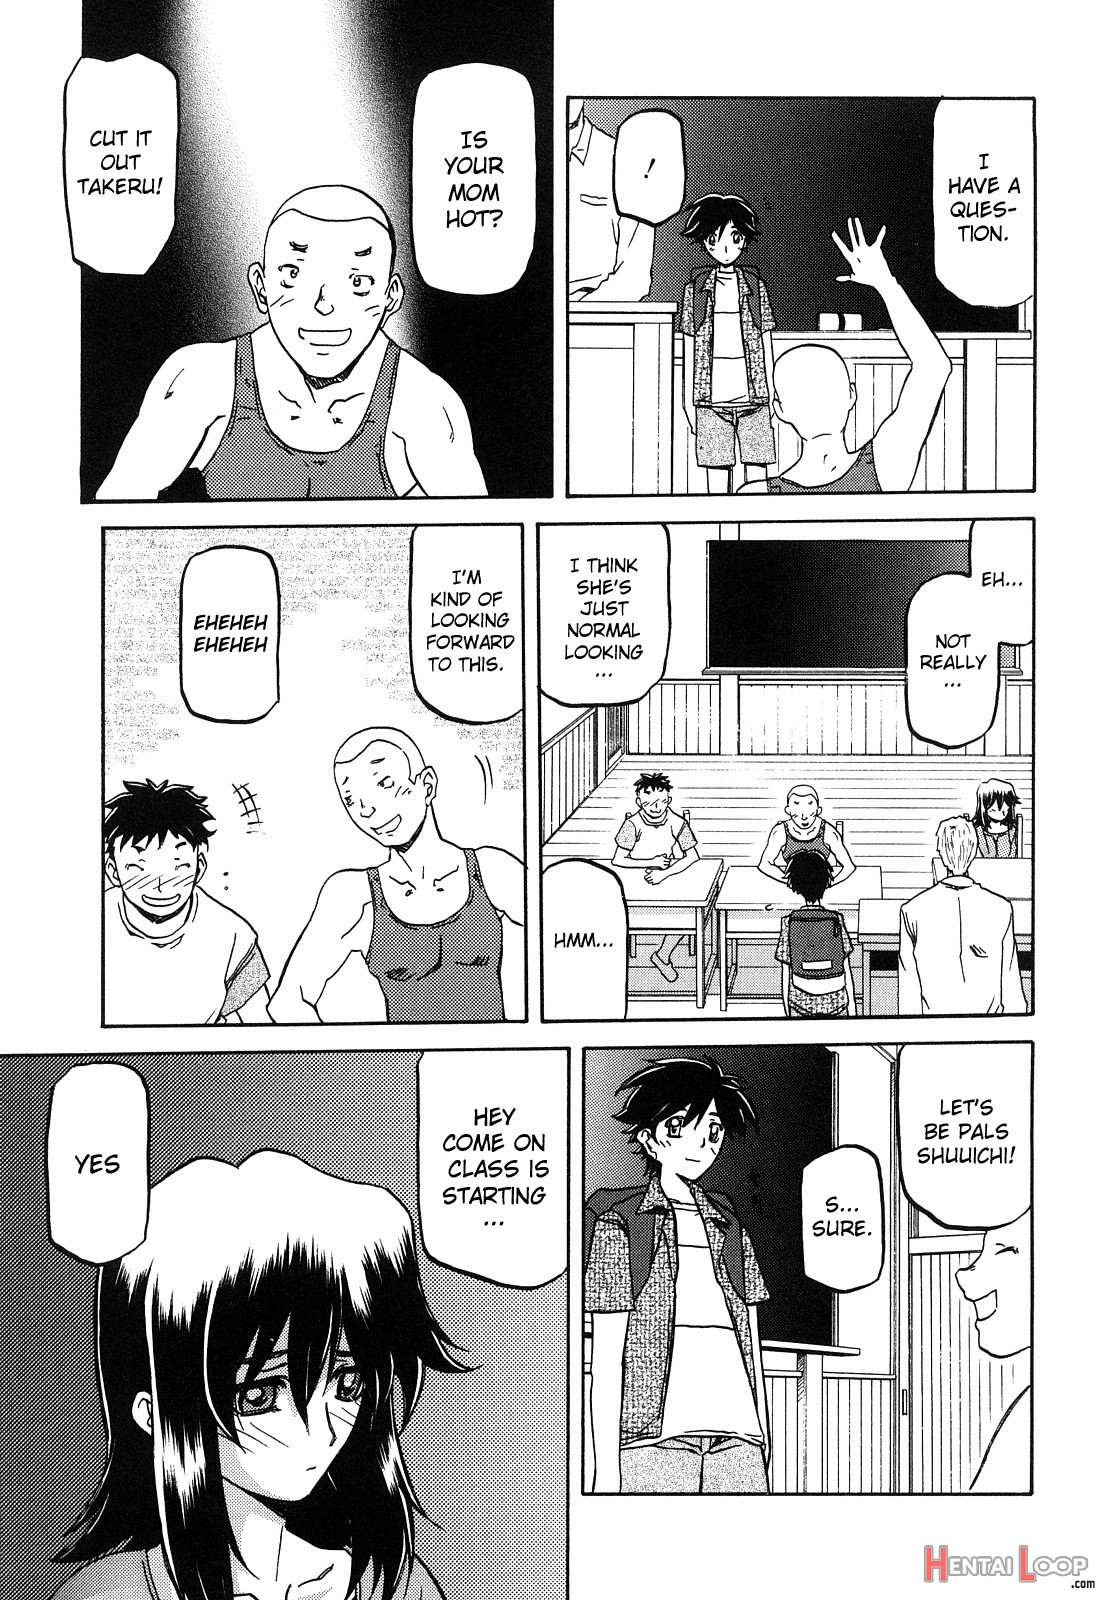 Sayuki No Sato page 44